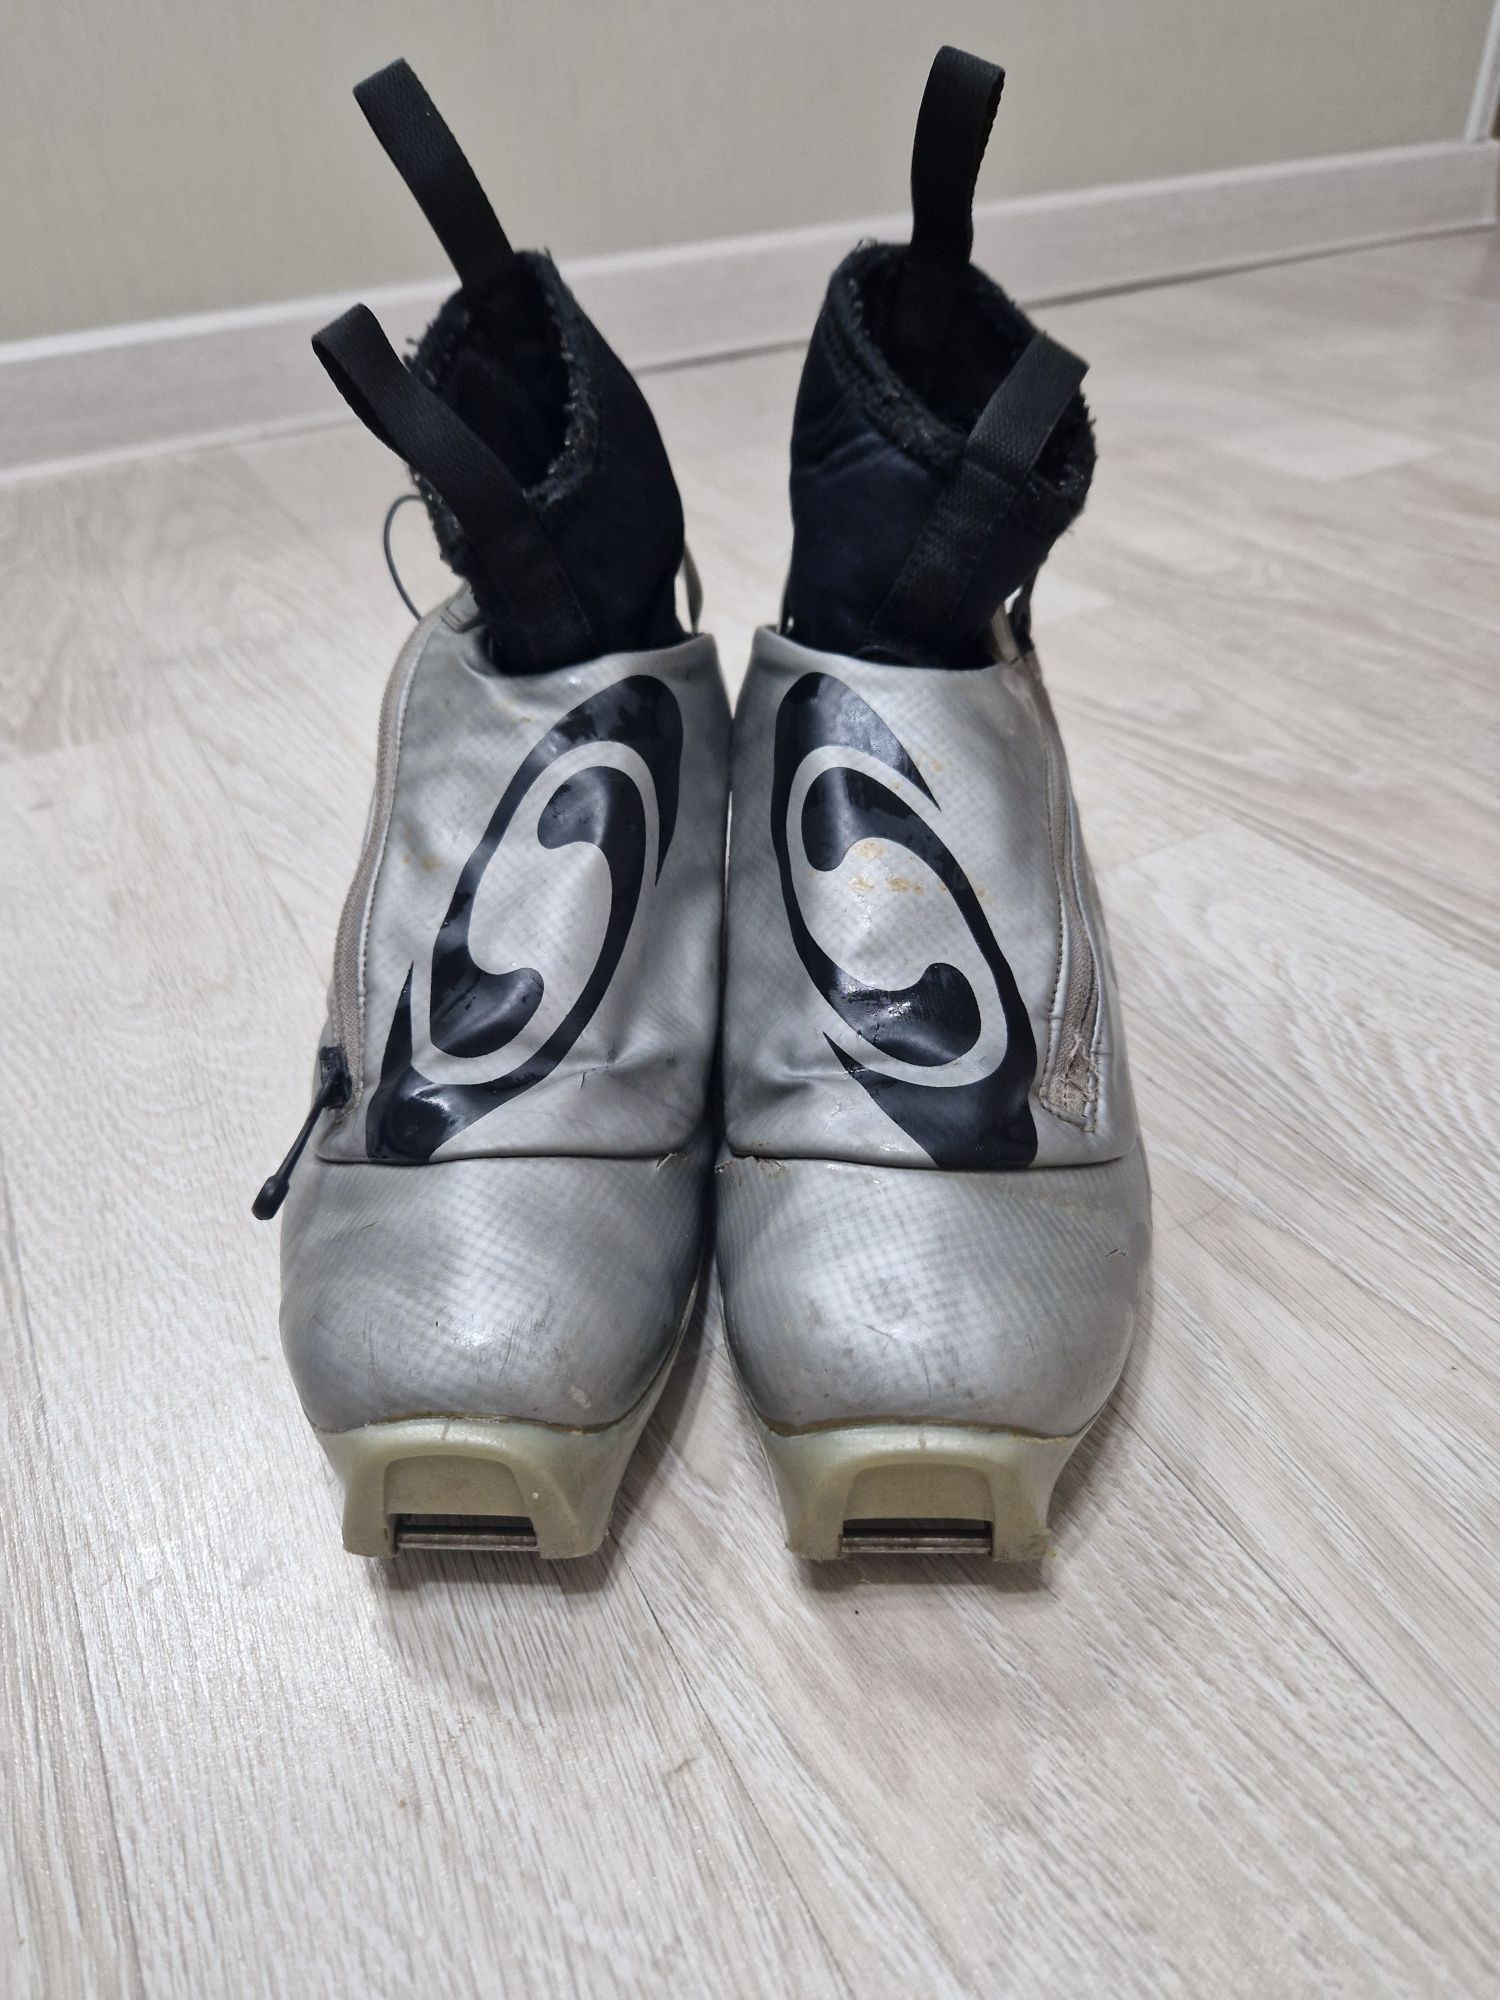 Лыжные ботинки саломон